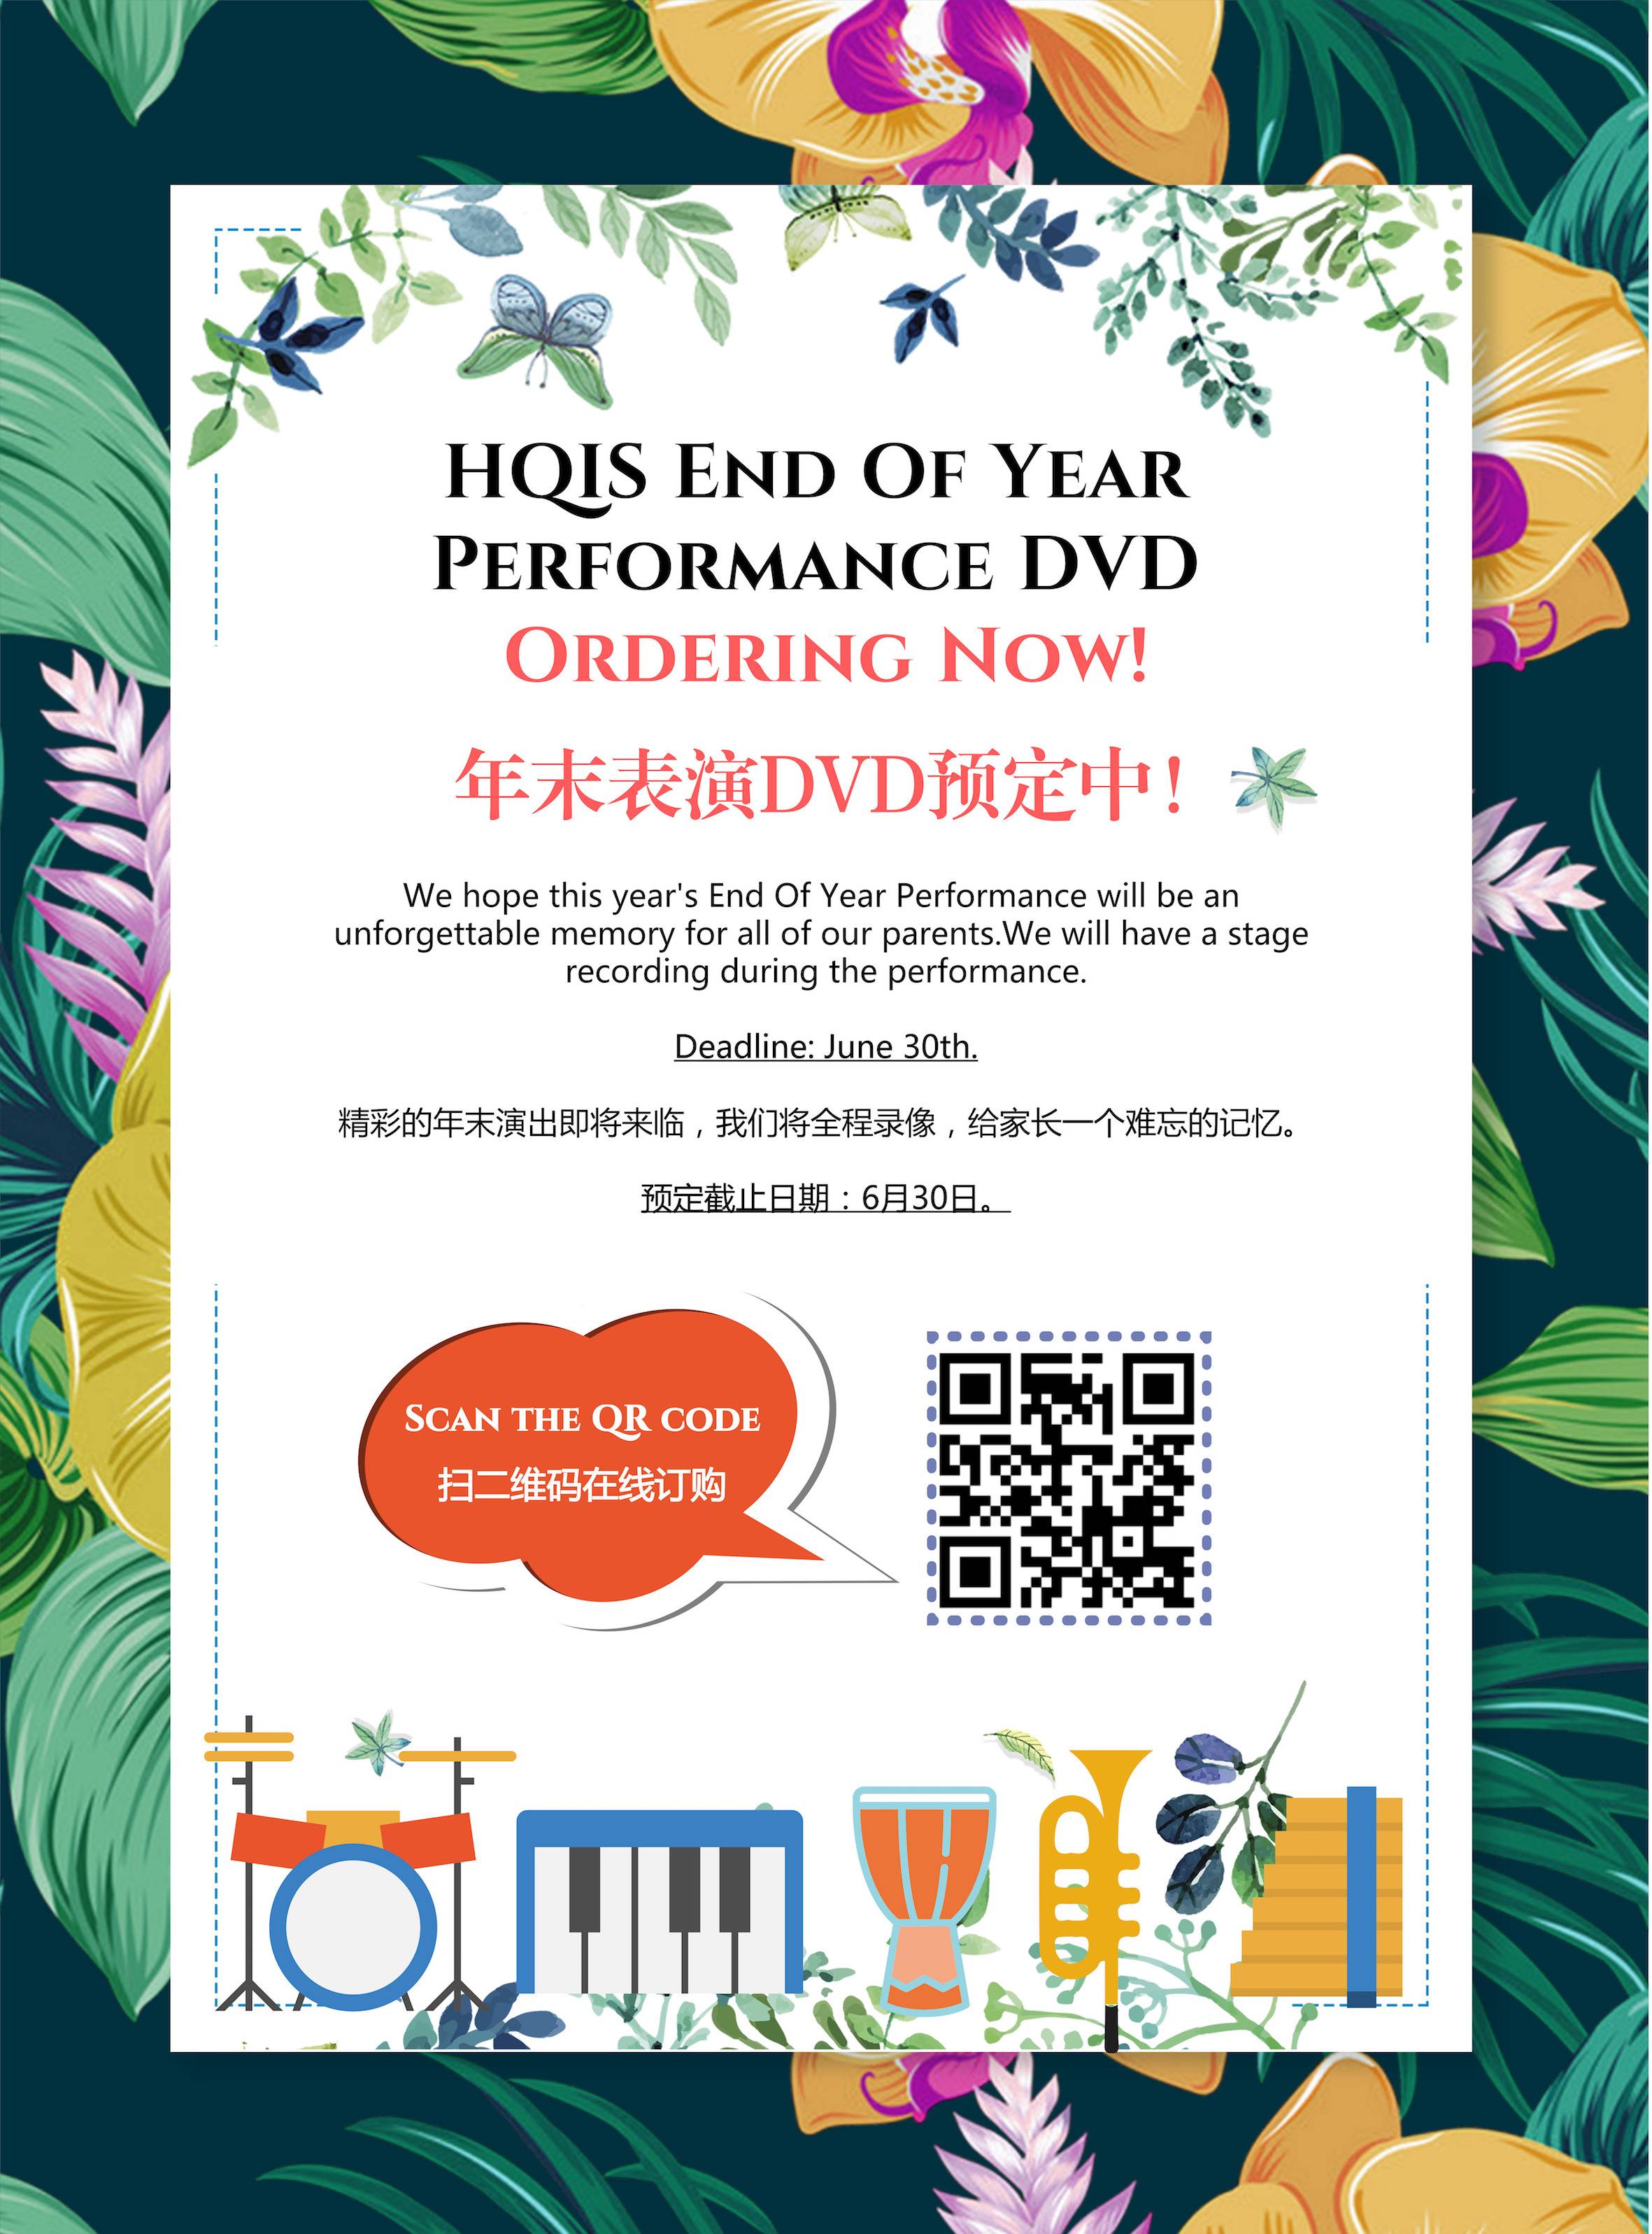 +年末DVD_印刷海报_2018.06.12的副本.jpg